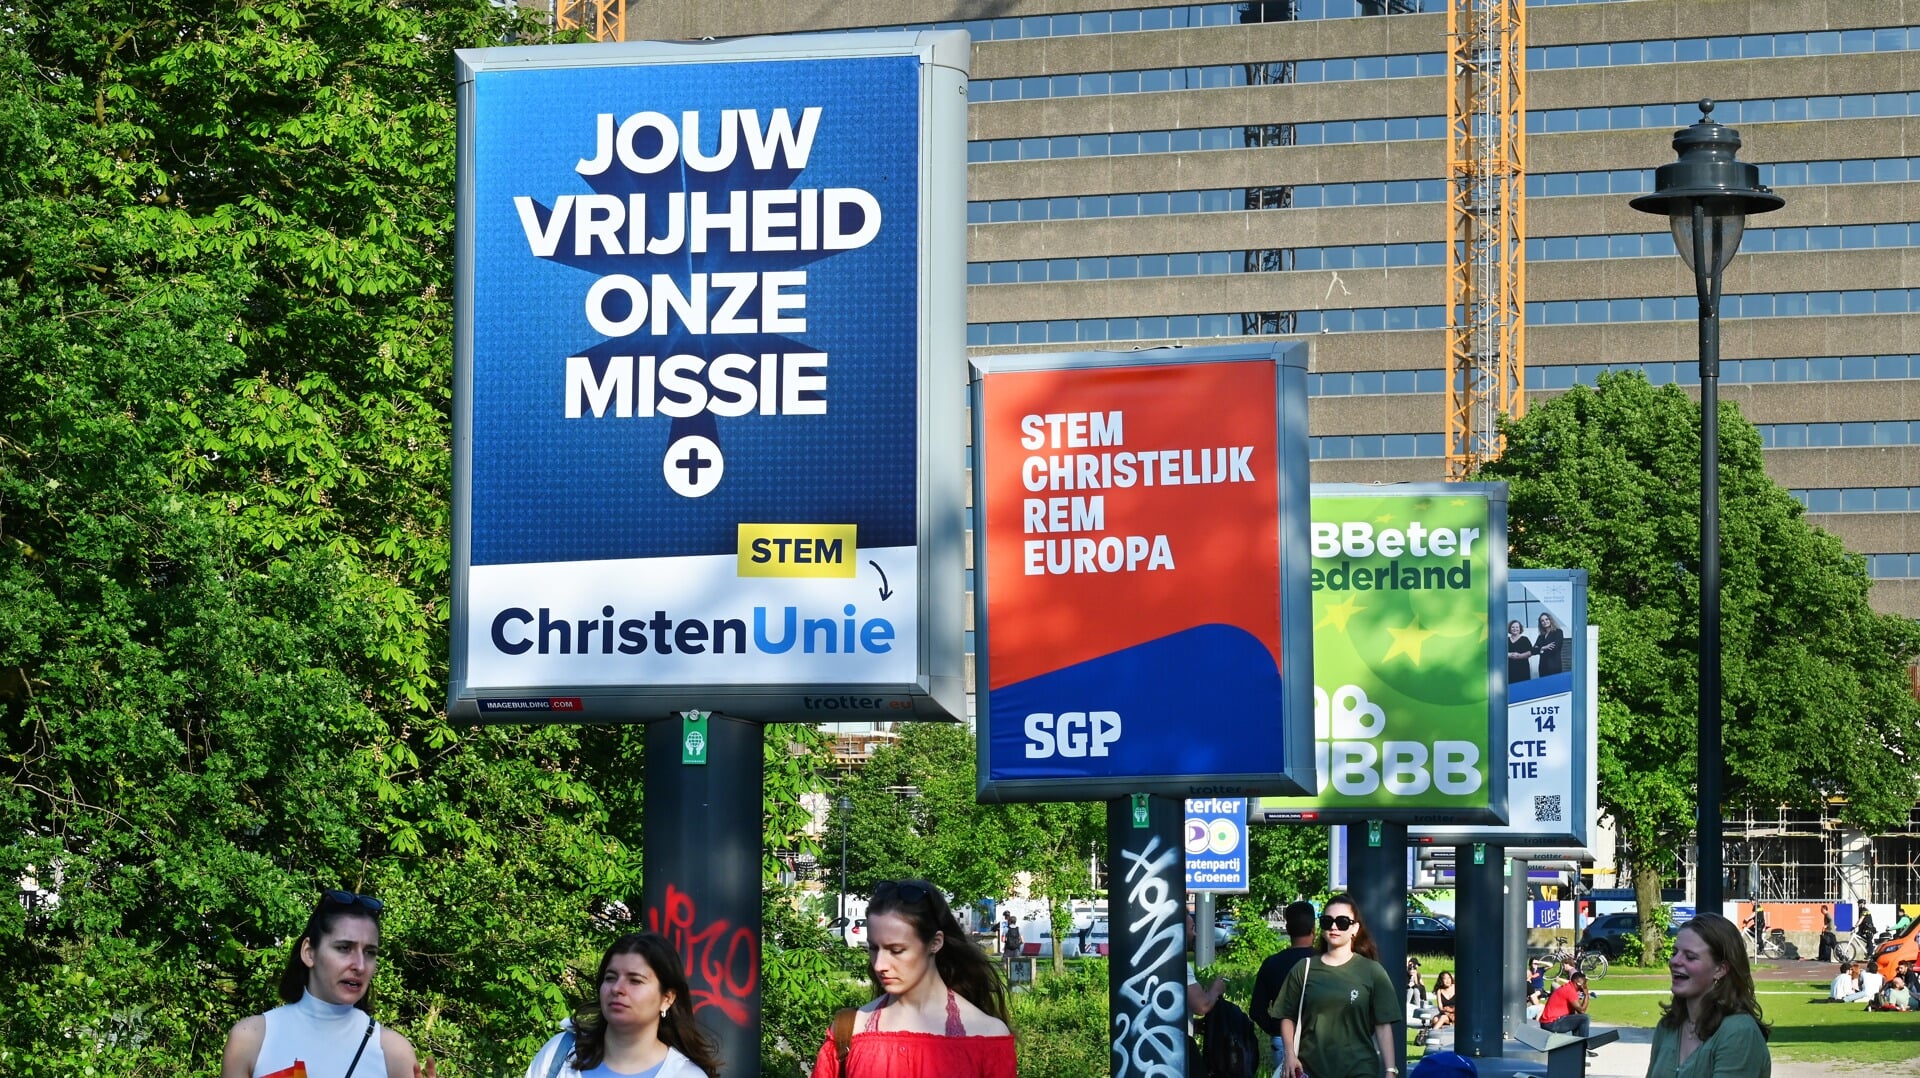 Na drie decennia met een gezamenlijke lijst, voeren SGP en ChristenUnie voor het eerst apart campagne voor de Europese verkiezingen